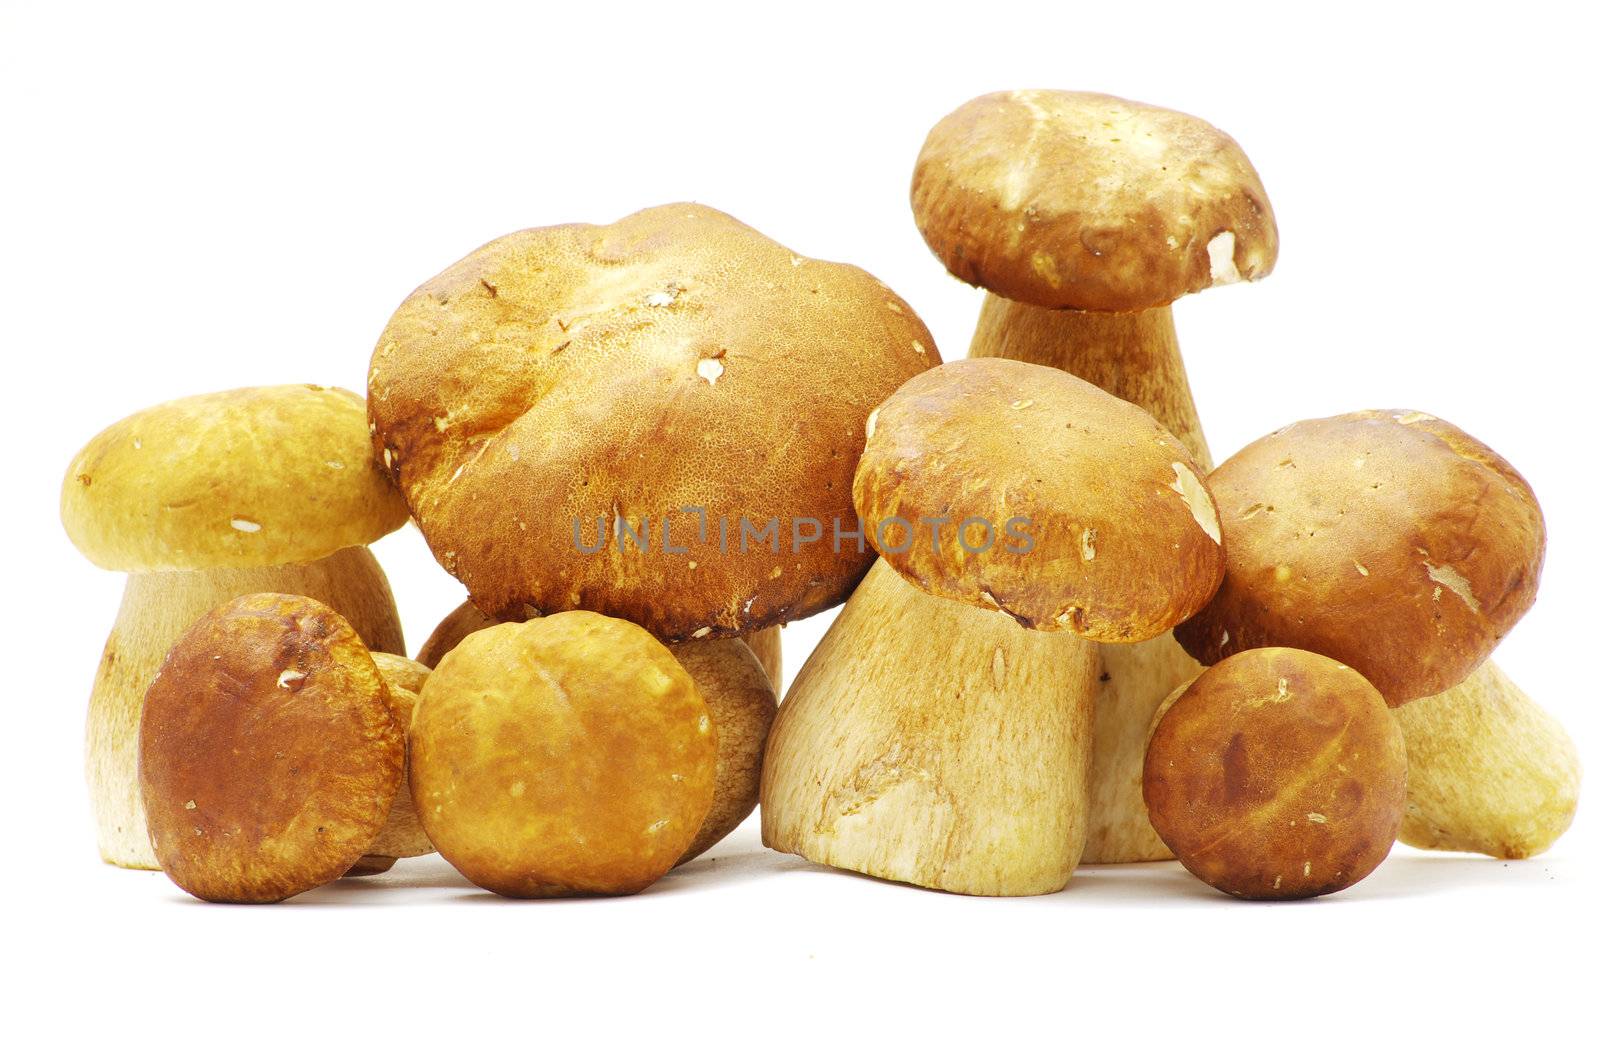  mushrooms  by Pakhnyushchyy